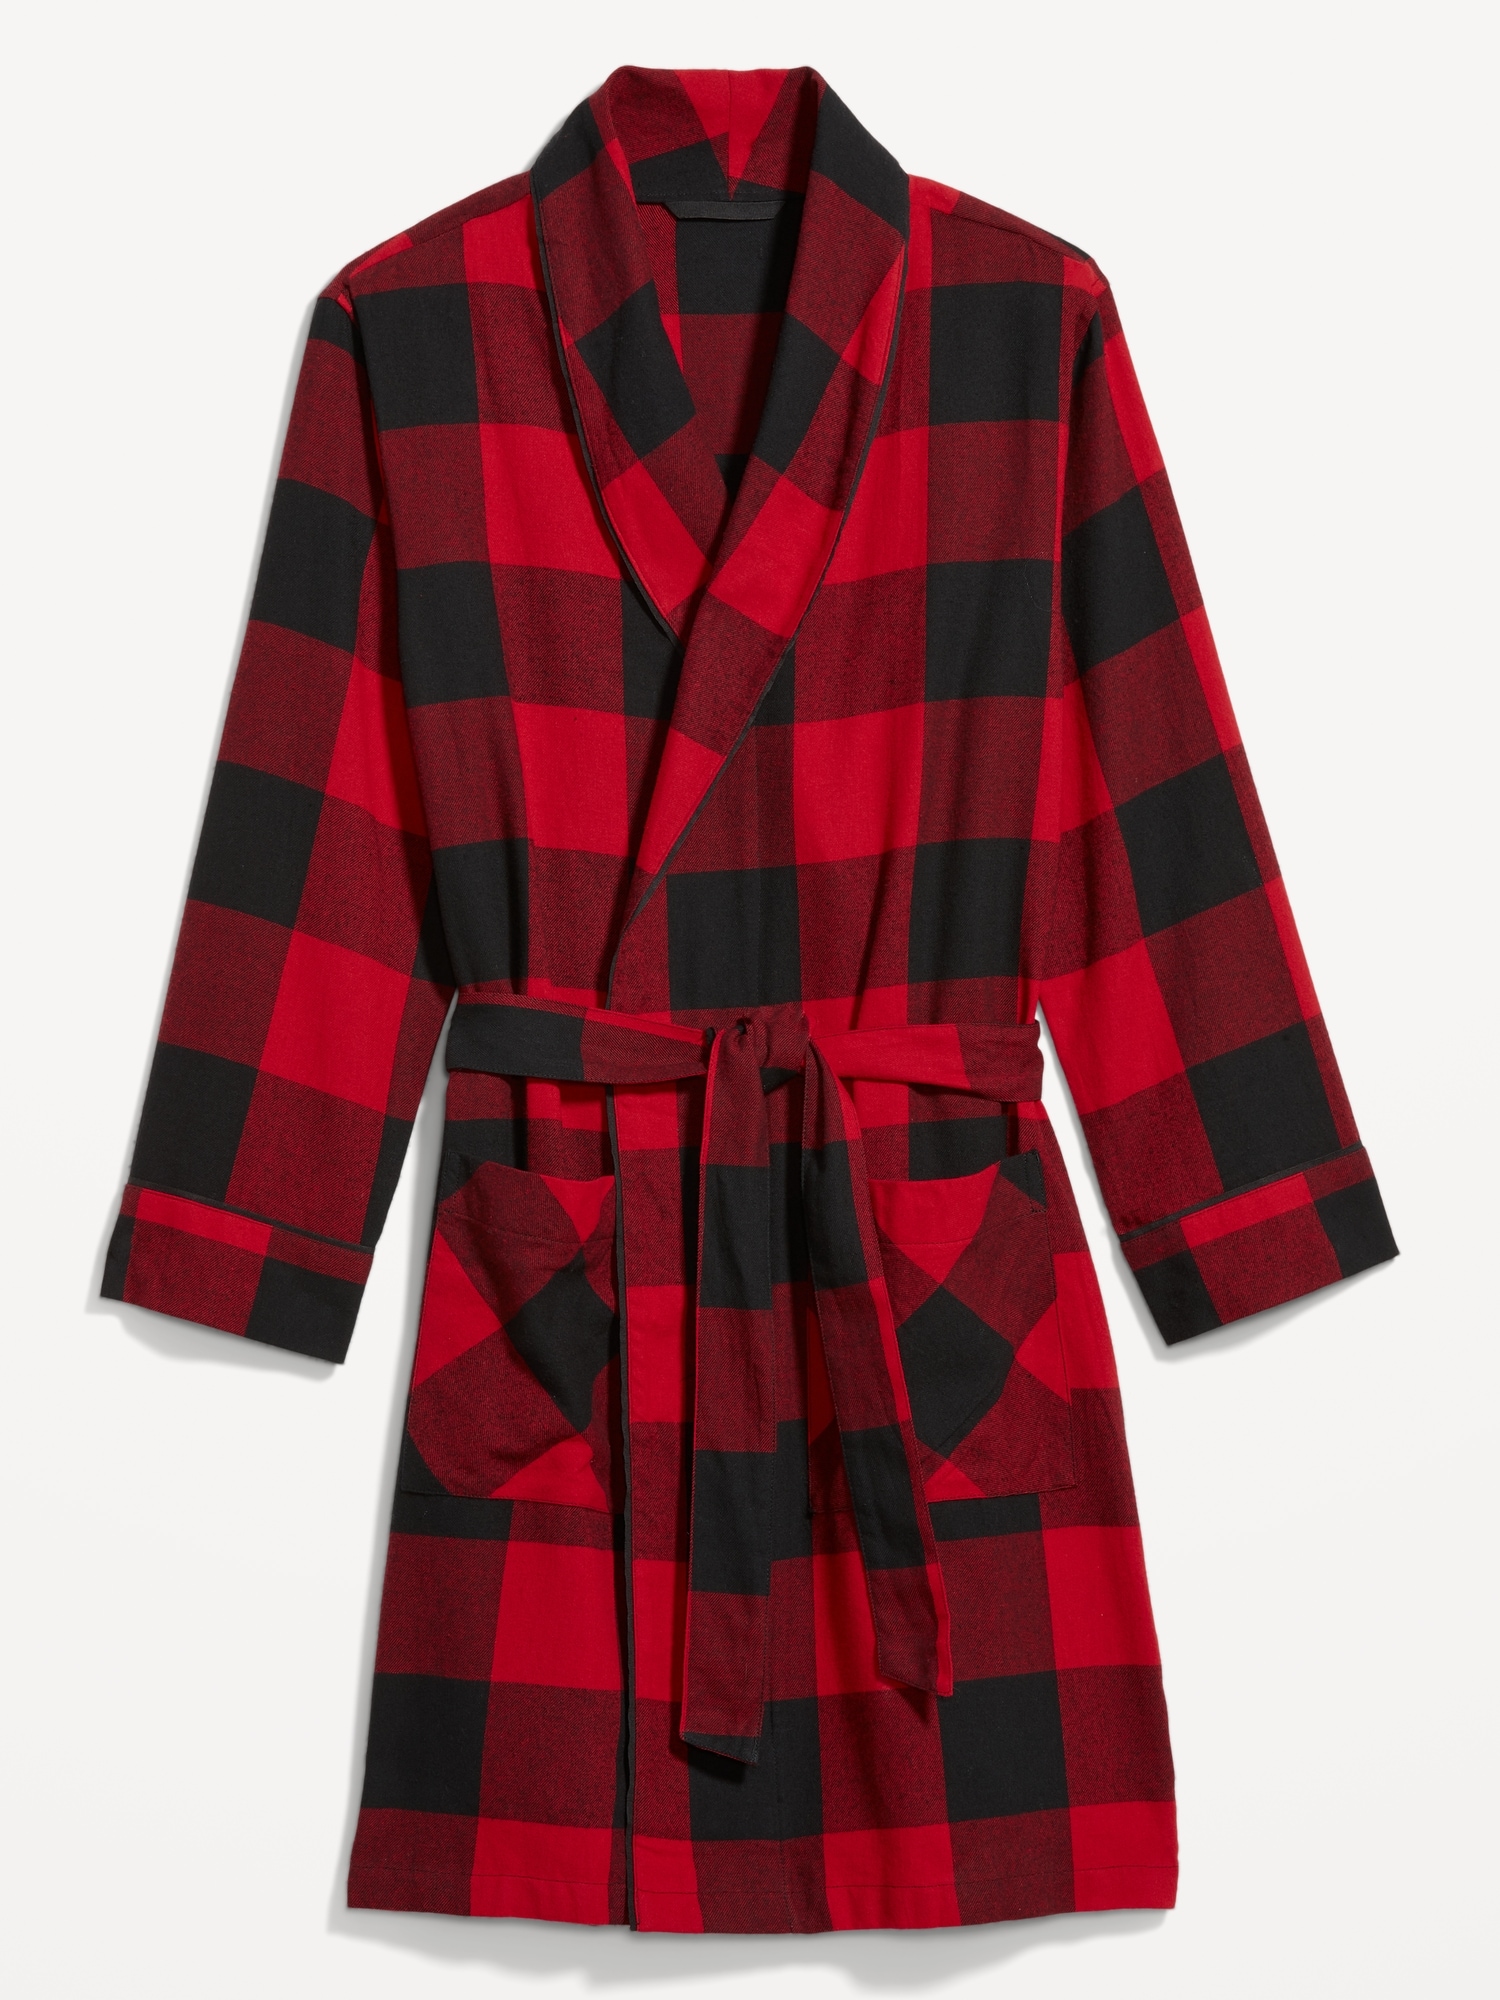 Men's 100% Cotton Flannel Robe - Windowpane Checks - Navy – FlannelPeople